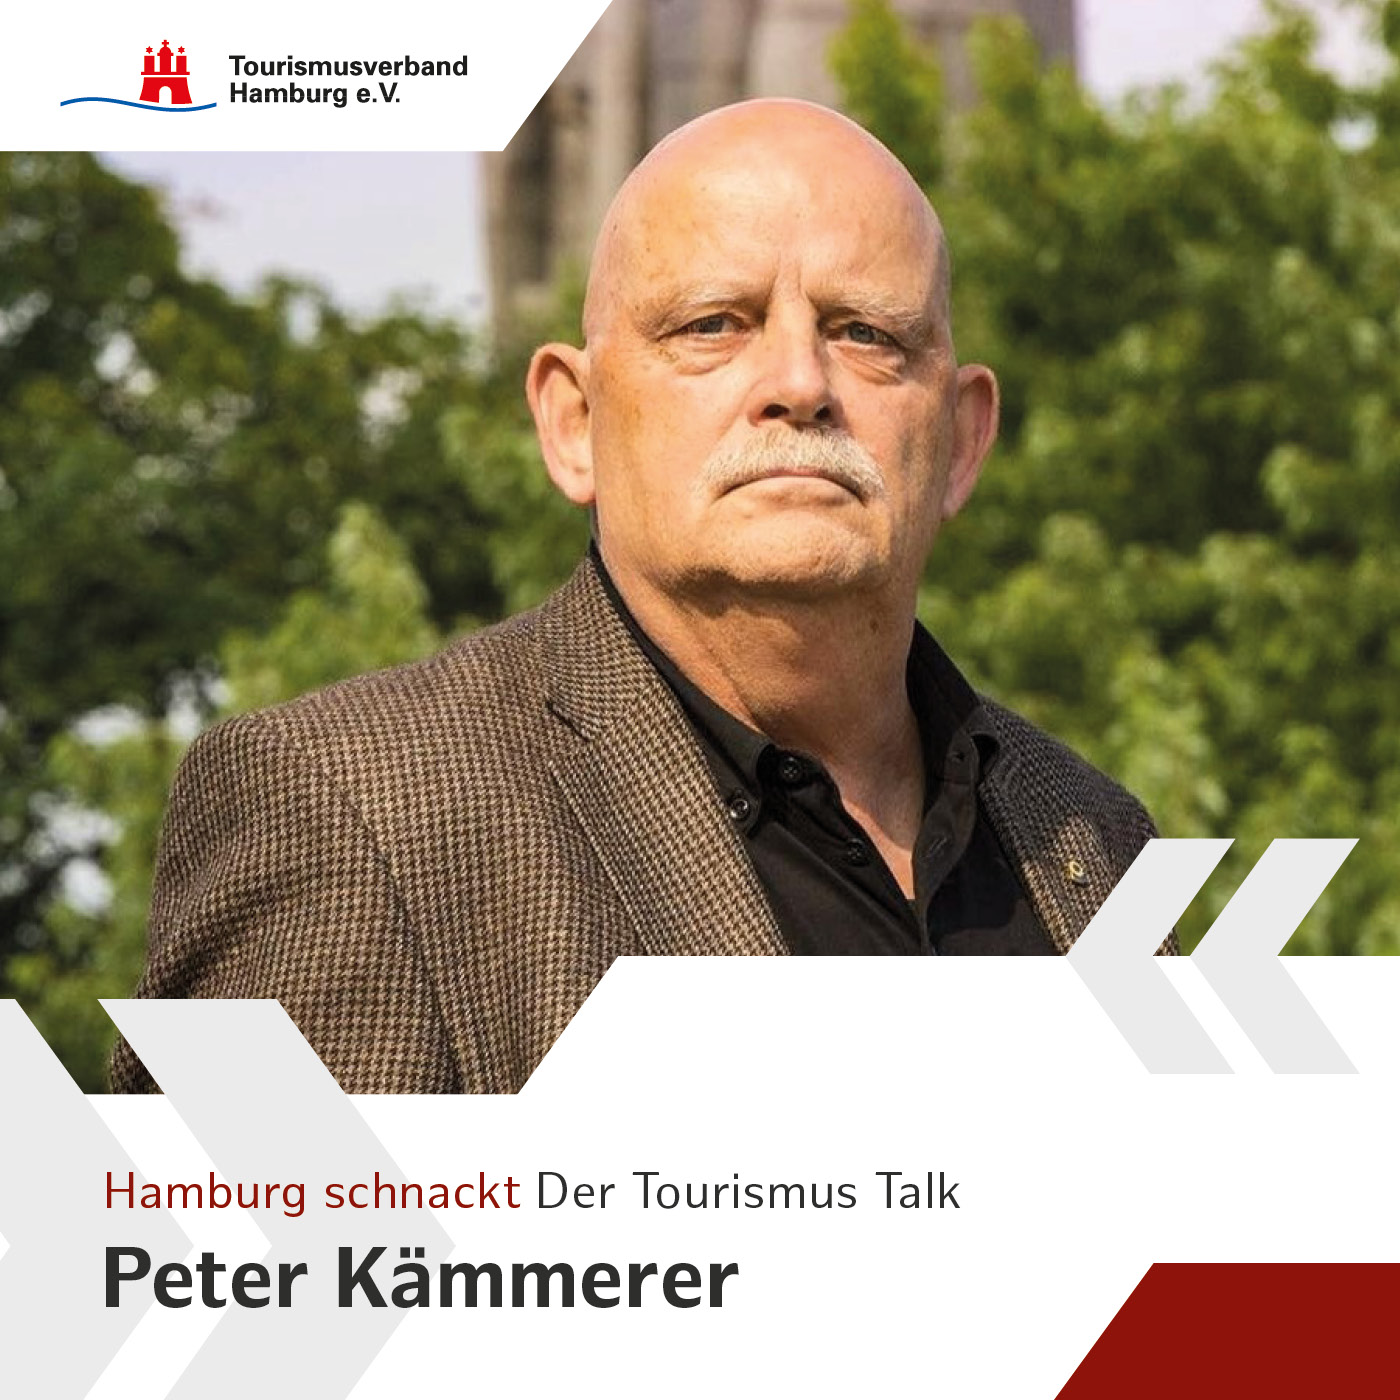 Hamburg schnackt mit Peter Kämmerer